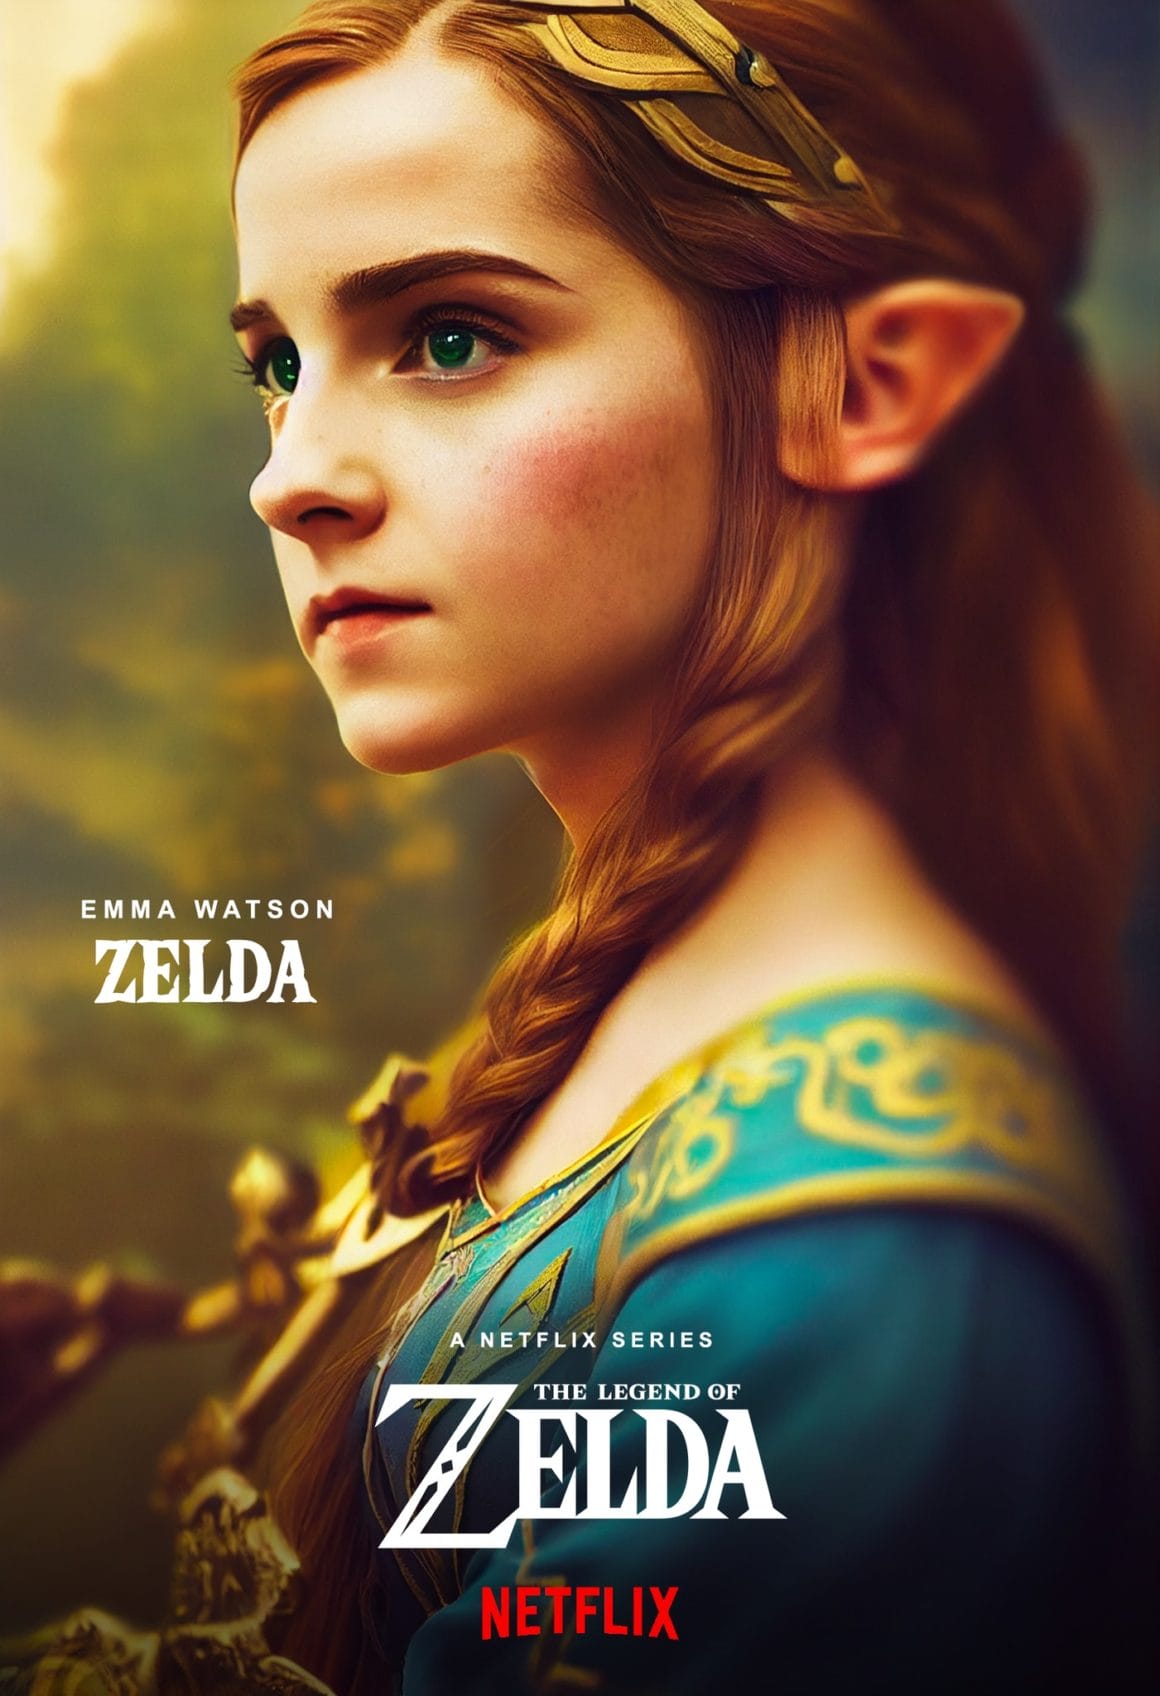 Fausse affiche d'une série Netflix avec l'actrice Emma Watson déguisée en Zelda.